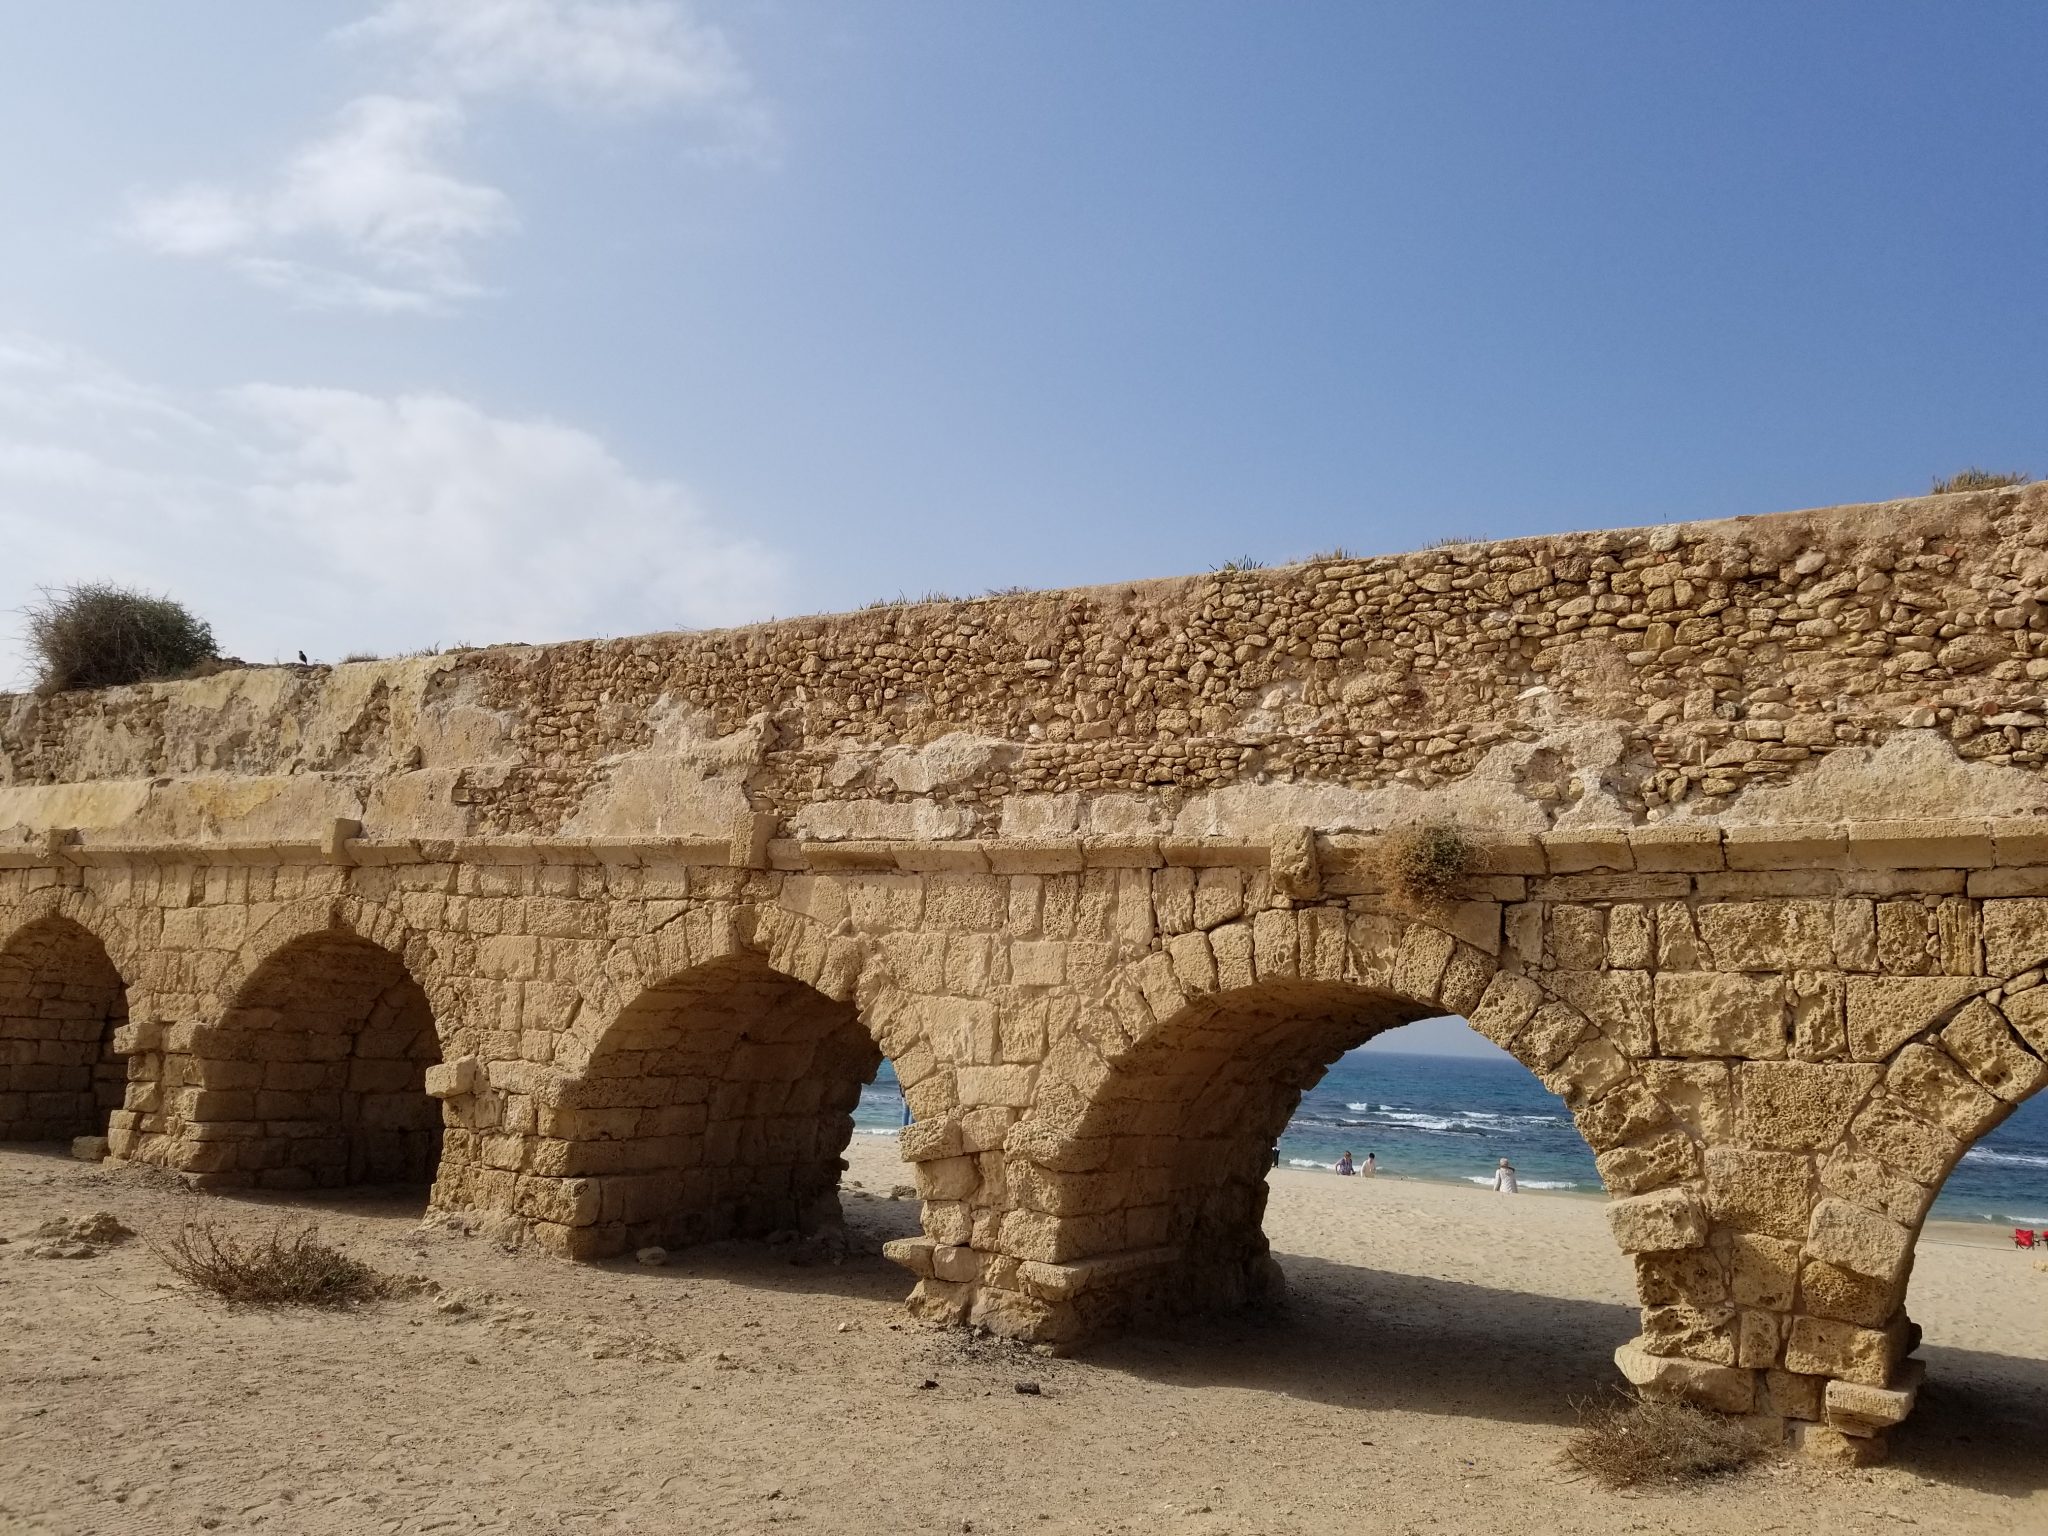 Roman aqueduct at Caesarea